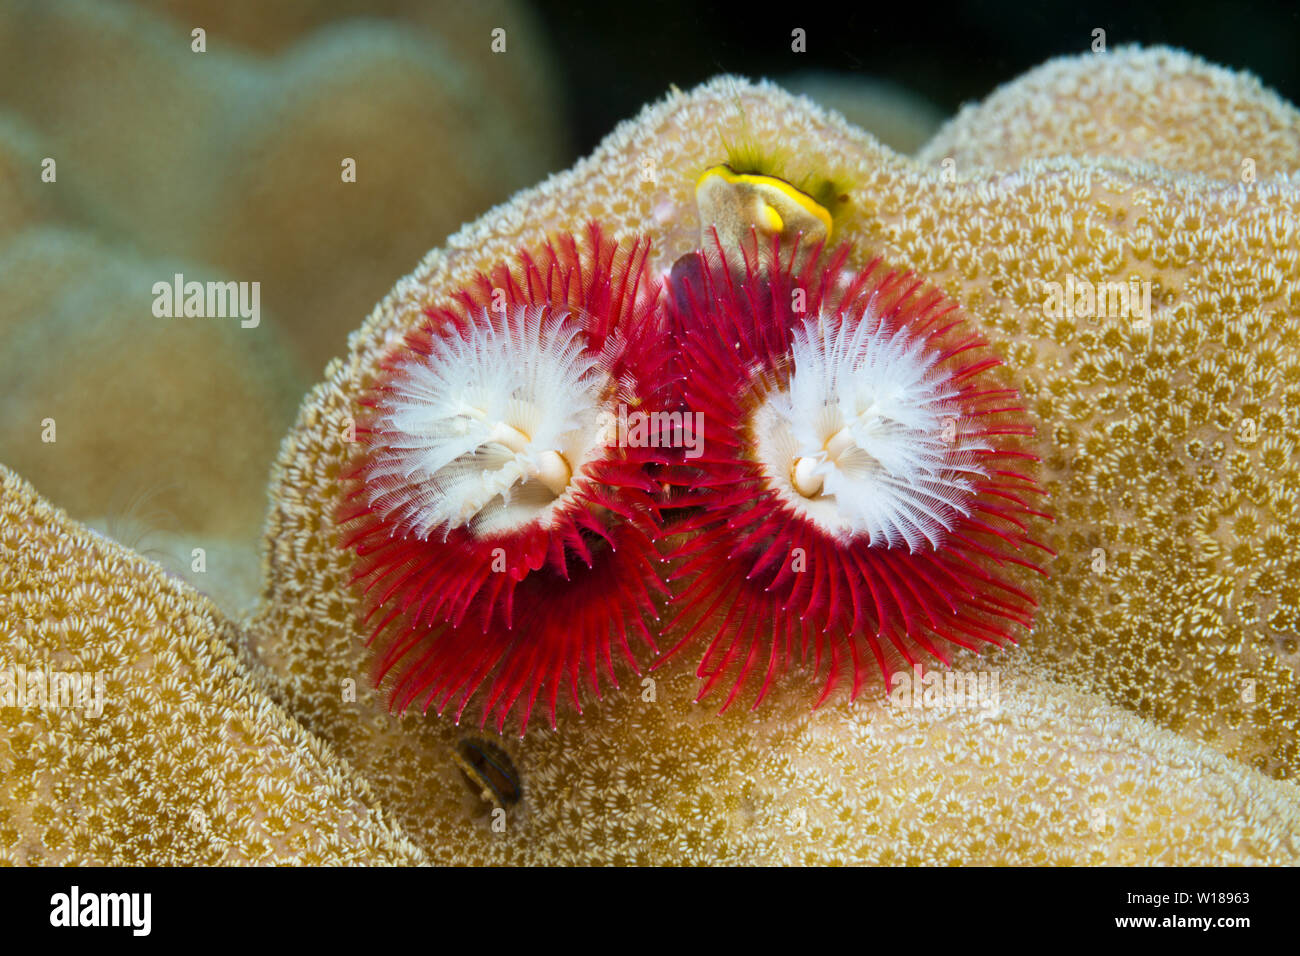 Red Christmas-Tree-Worm, Spirobranchus giganteus, Tufi, Solomon Sea, Papua New Guinea Stock Photo